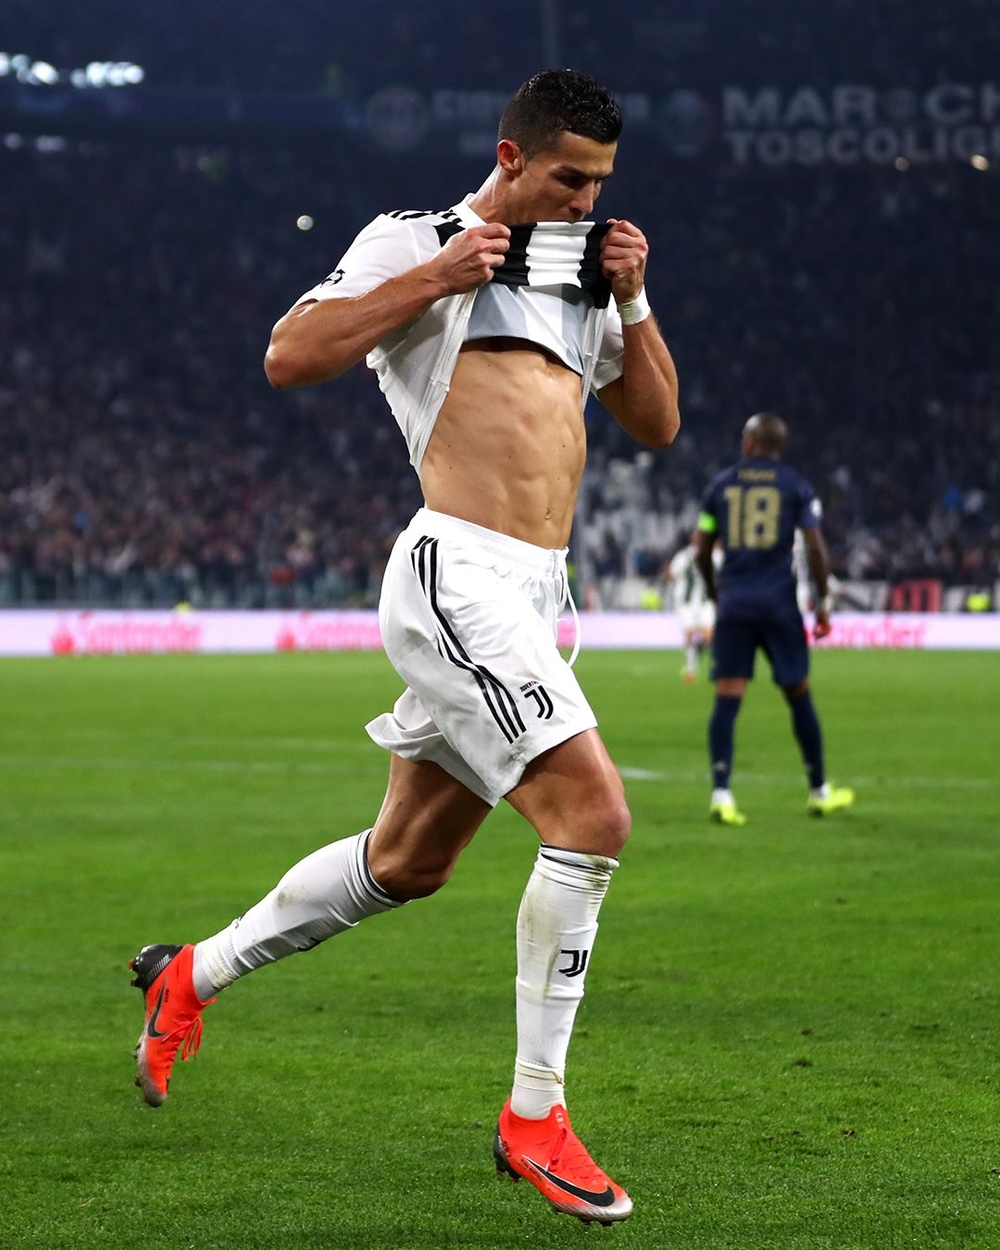 
"Dù thua nhưng Juventus vẫn ngẩng cao đầu" - Cristiano Ronaldo.